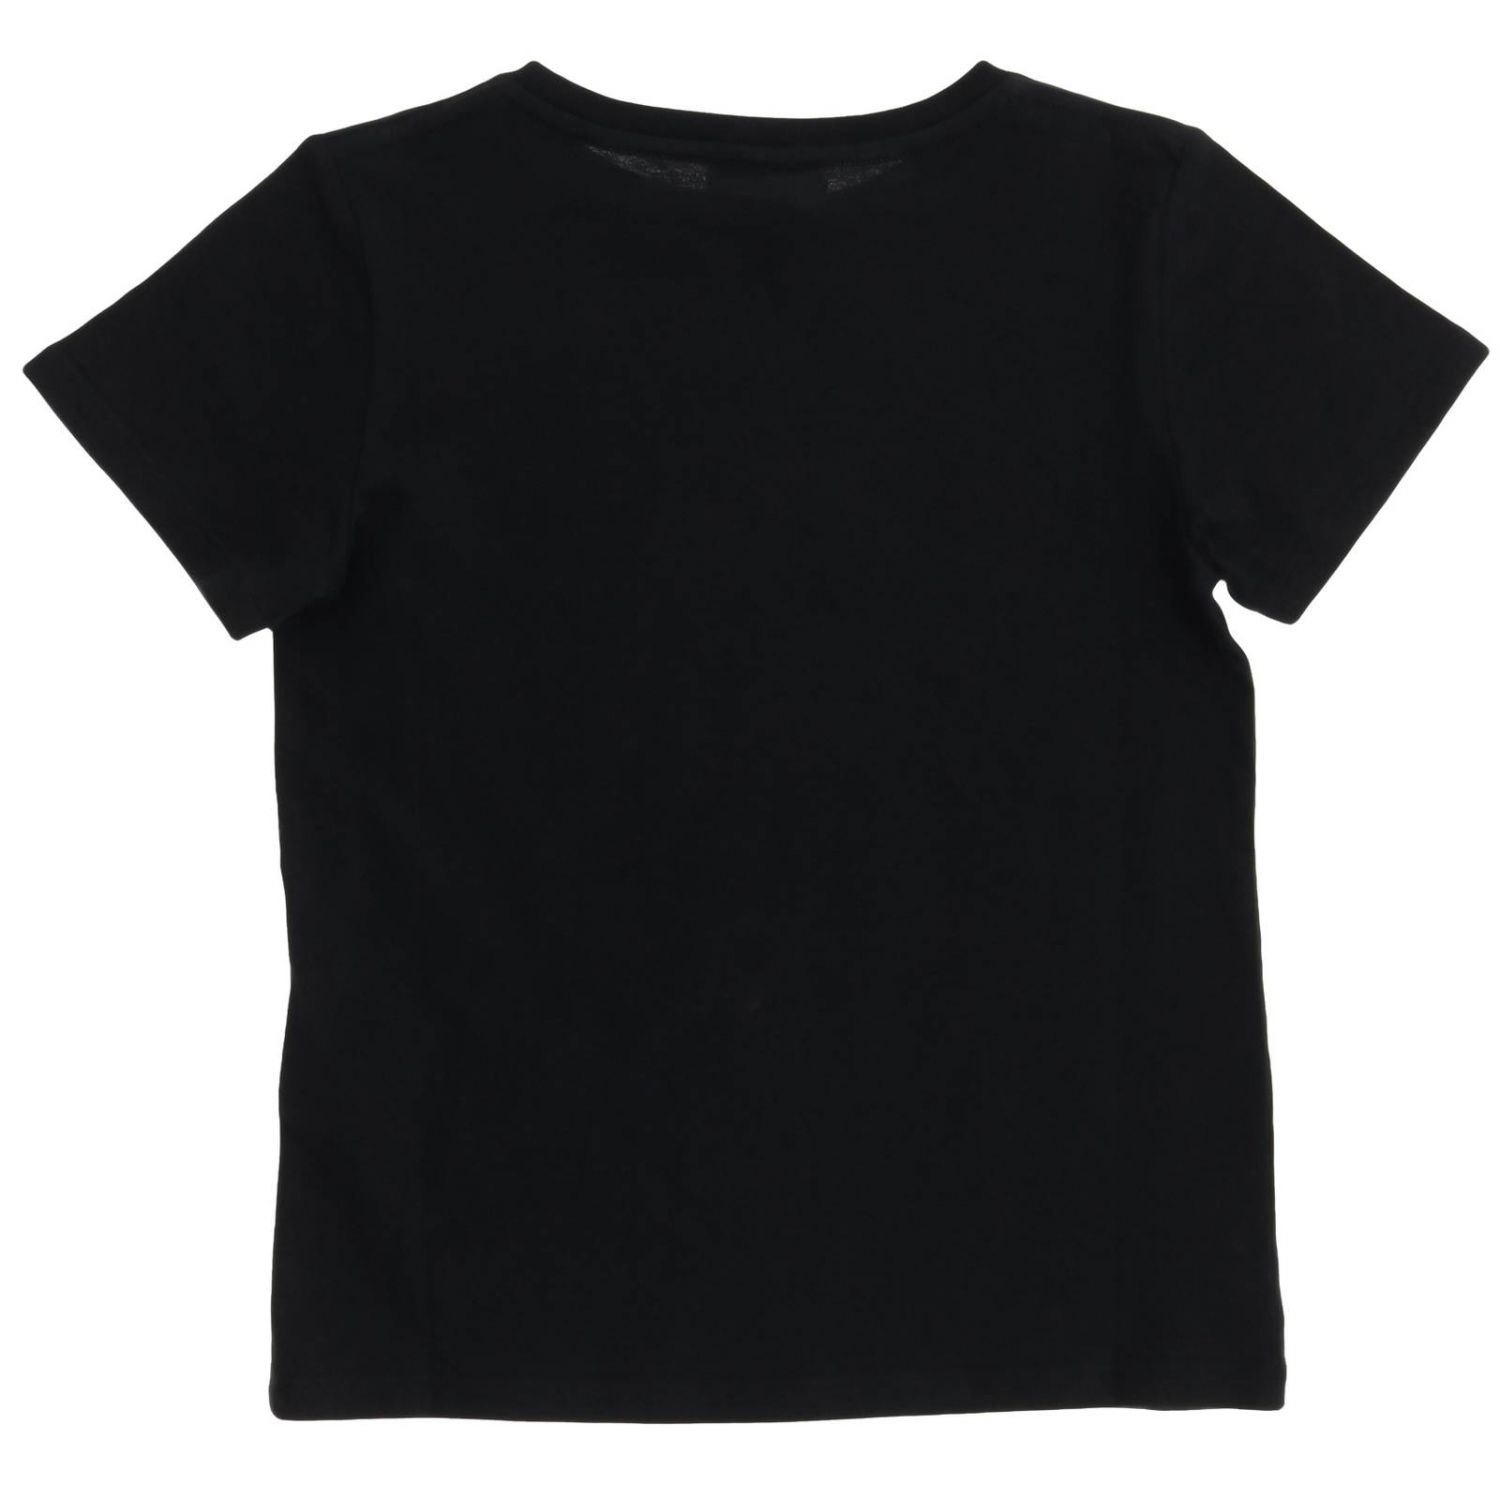 グッチ(GUCCI): Tシャツ ボーイ - ブラック | Tシャツ グッチ 561651 XJAHY GIGLIO.COM